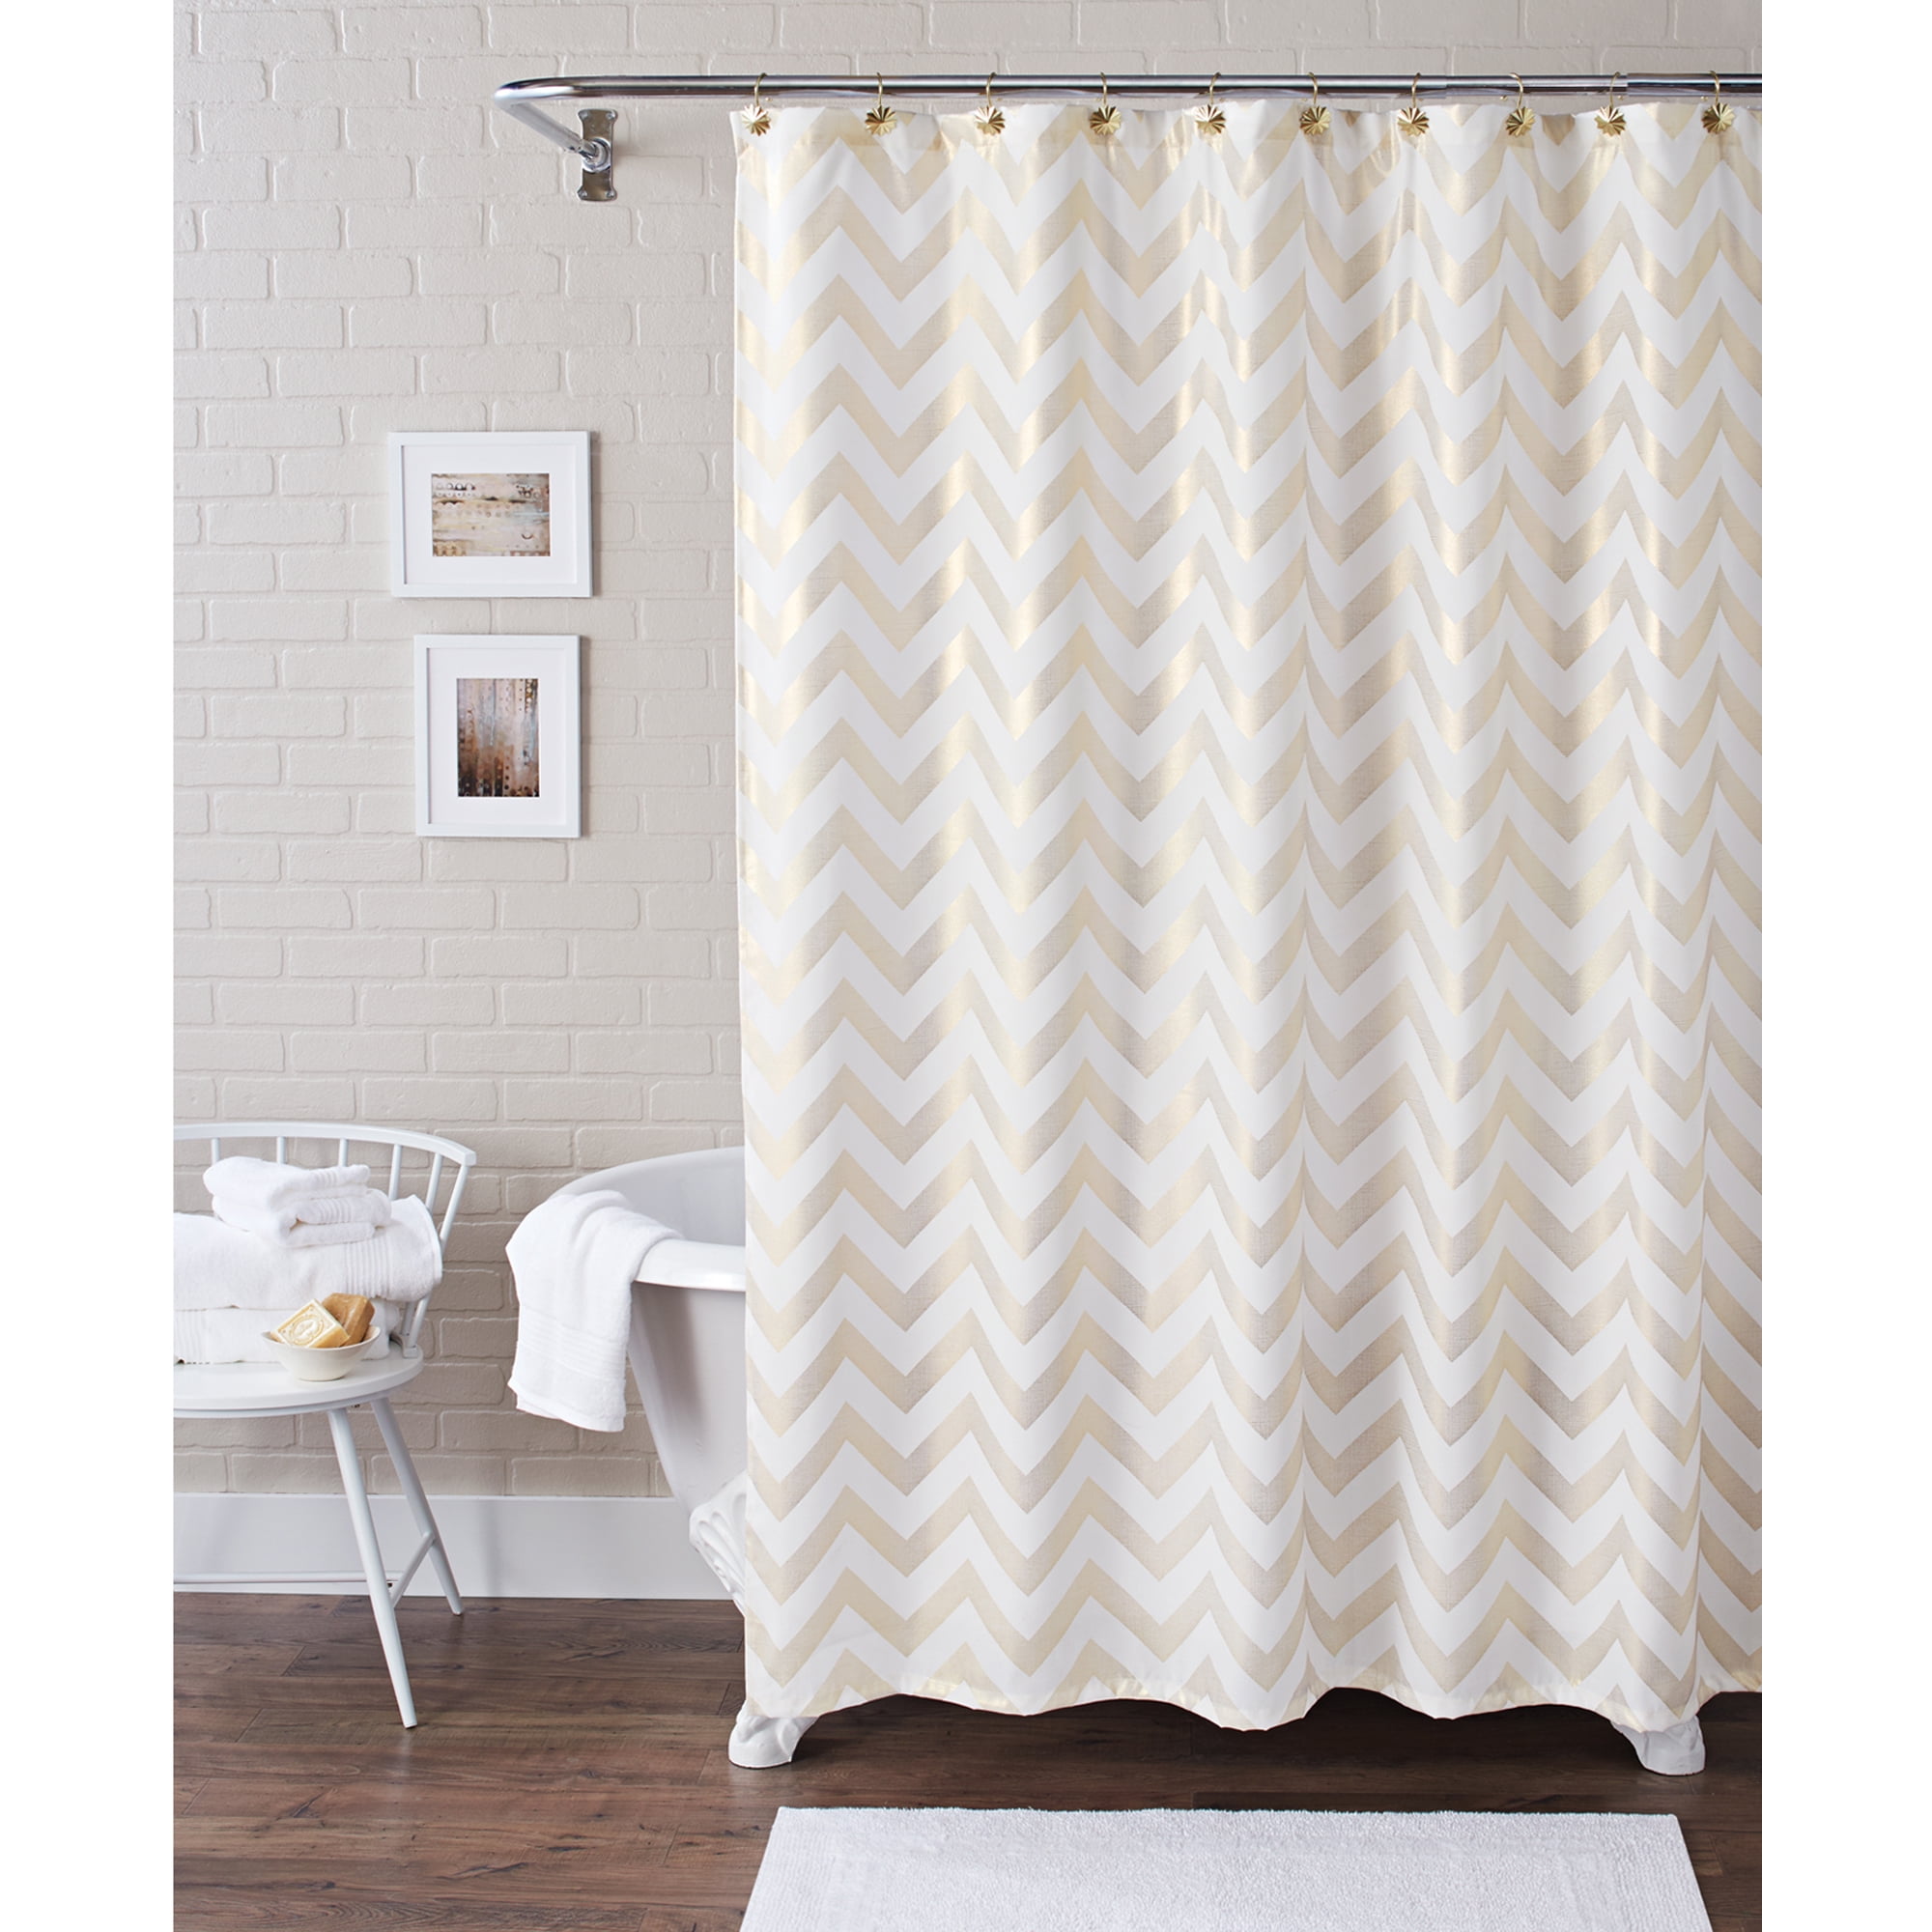 Room Essentials Shower Curtain White Brown Geo Trellis Polyester 